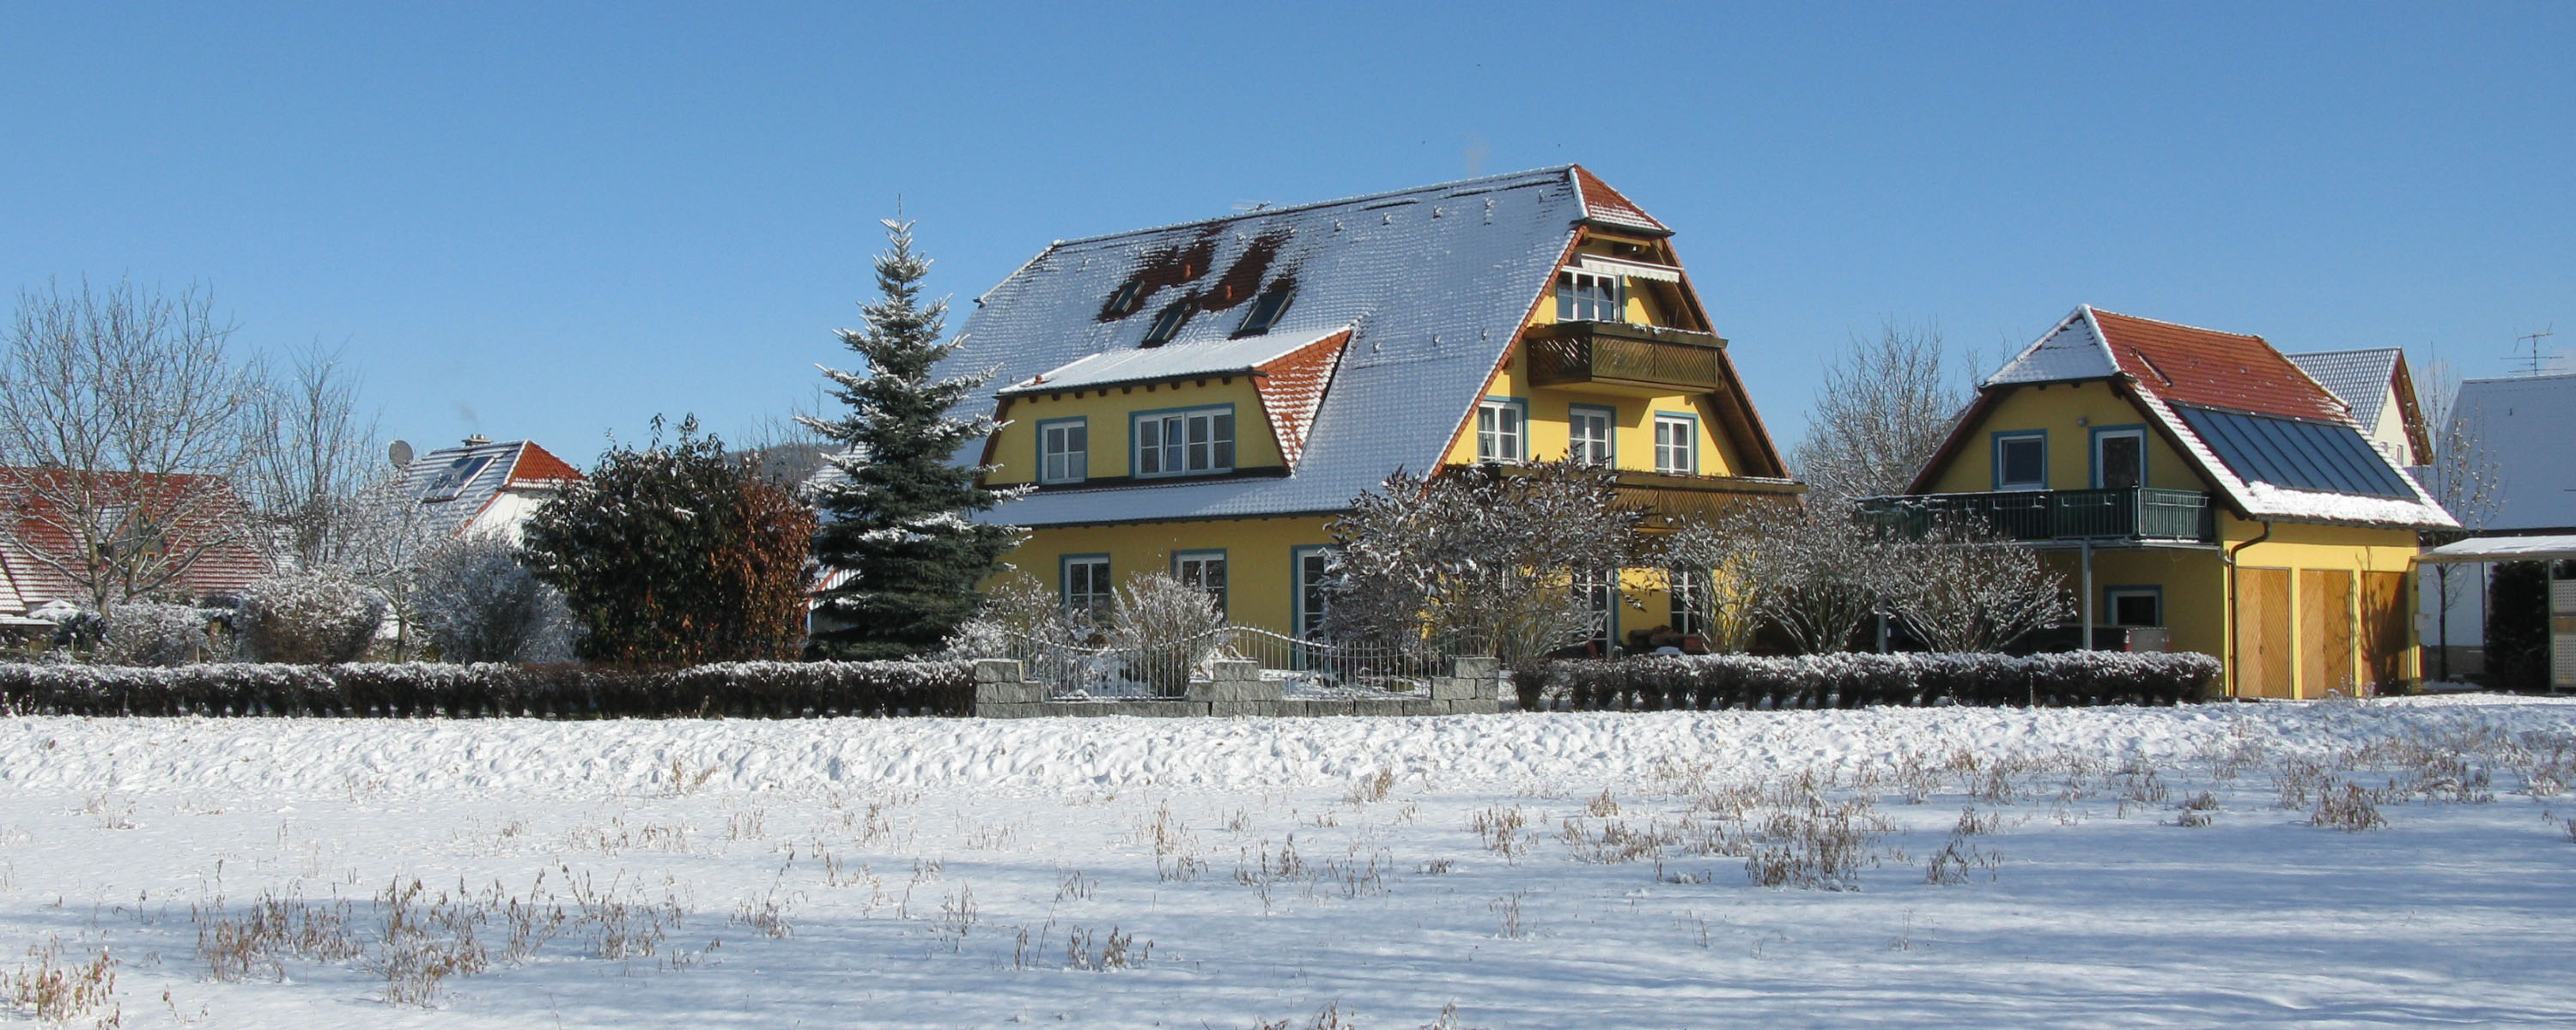 Anwesen Fliederweg 29 in Eggolsheim im Winter